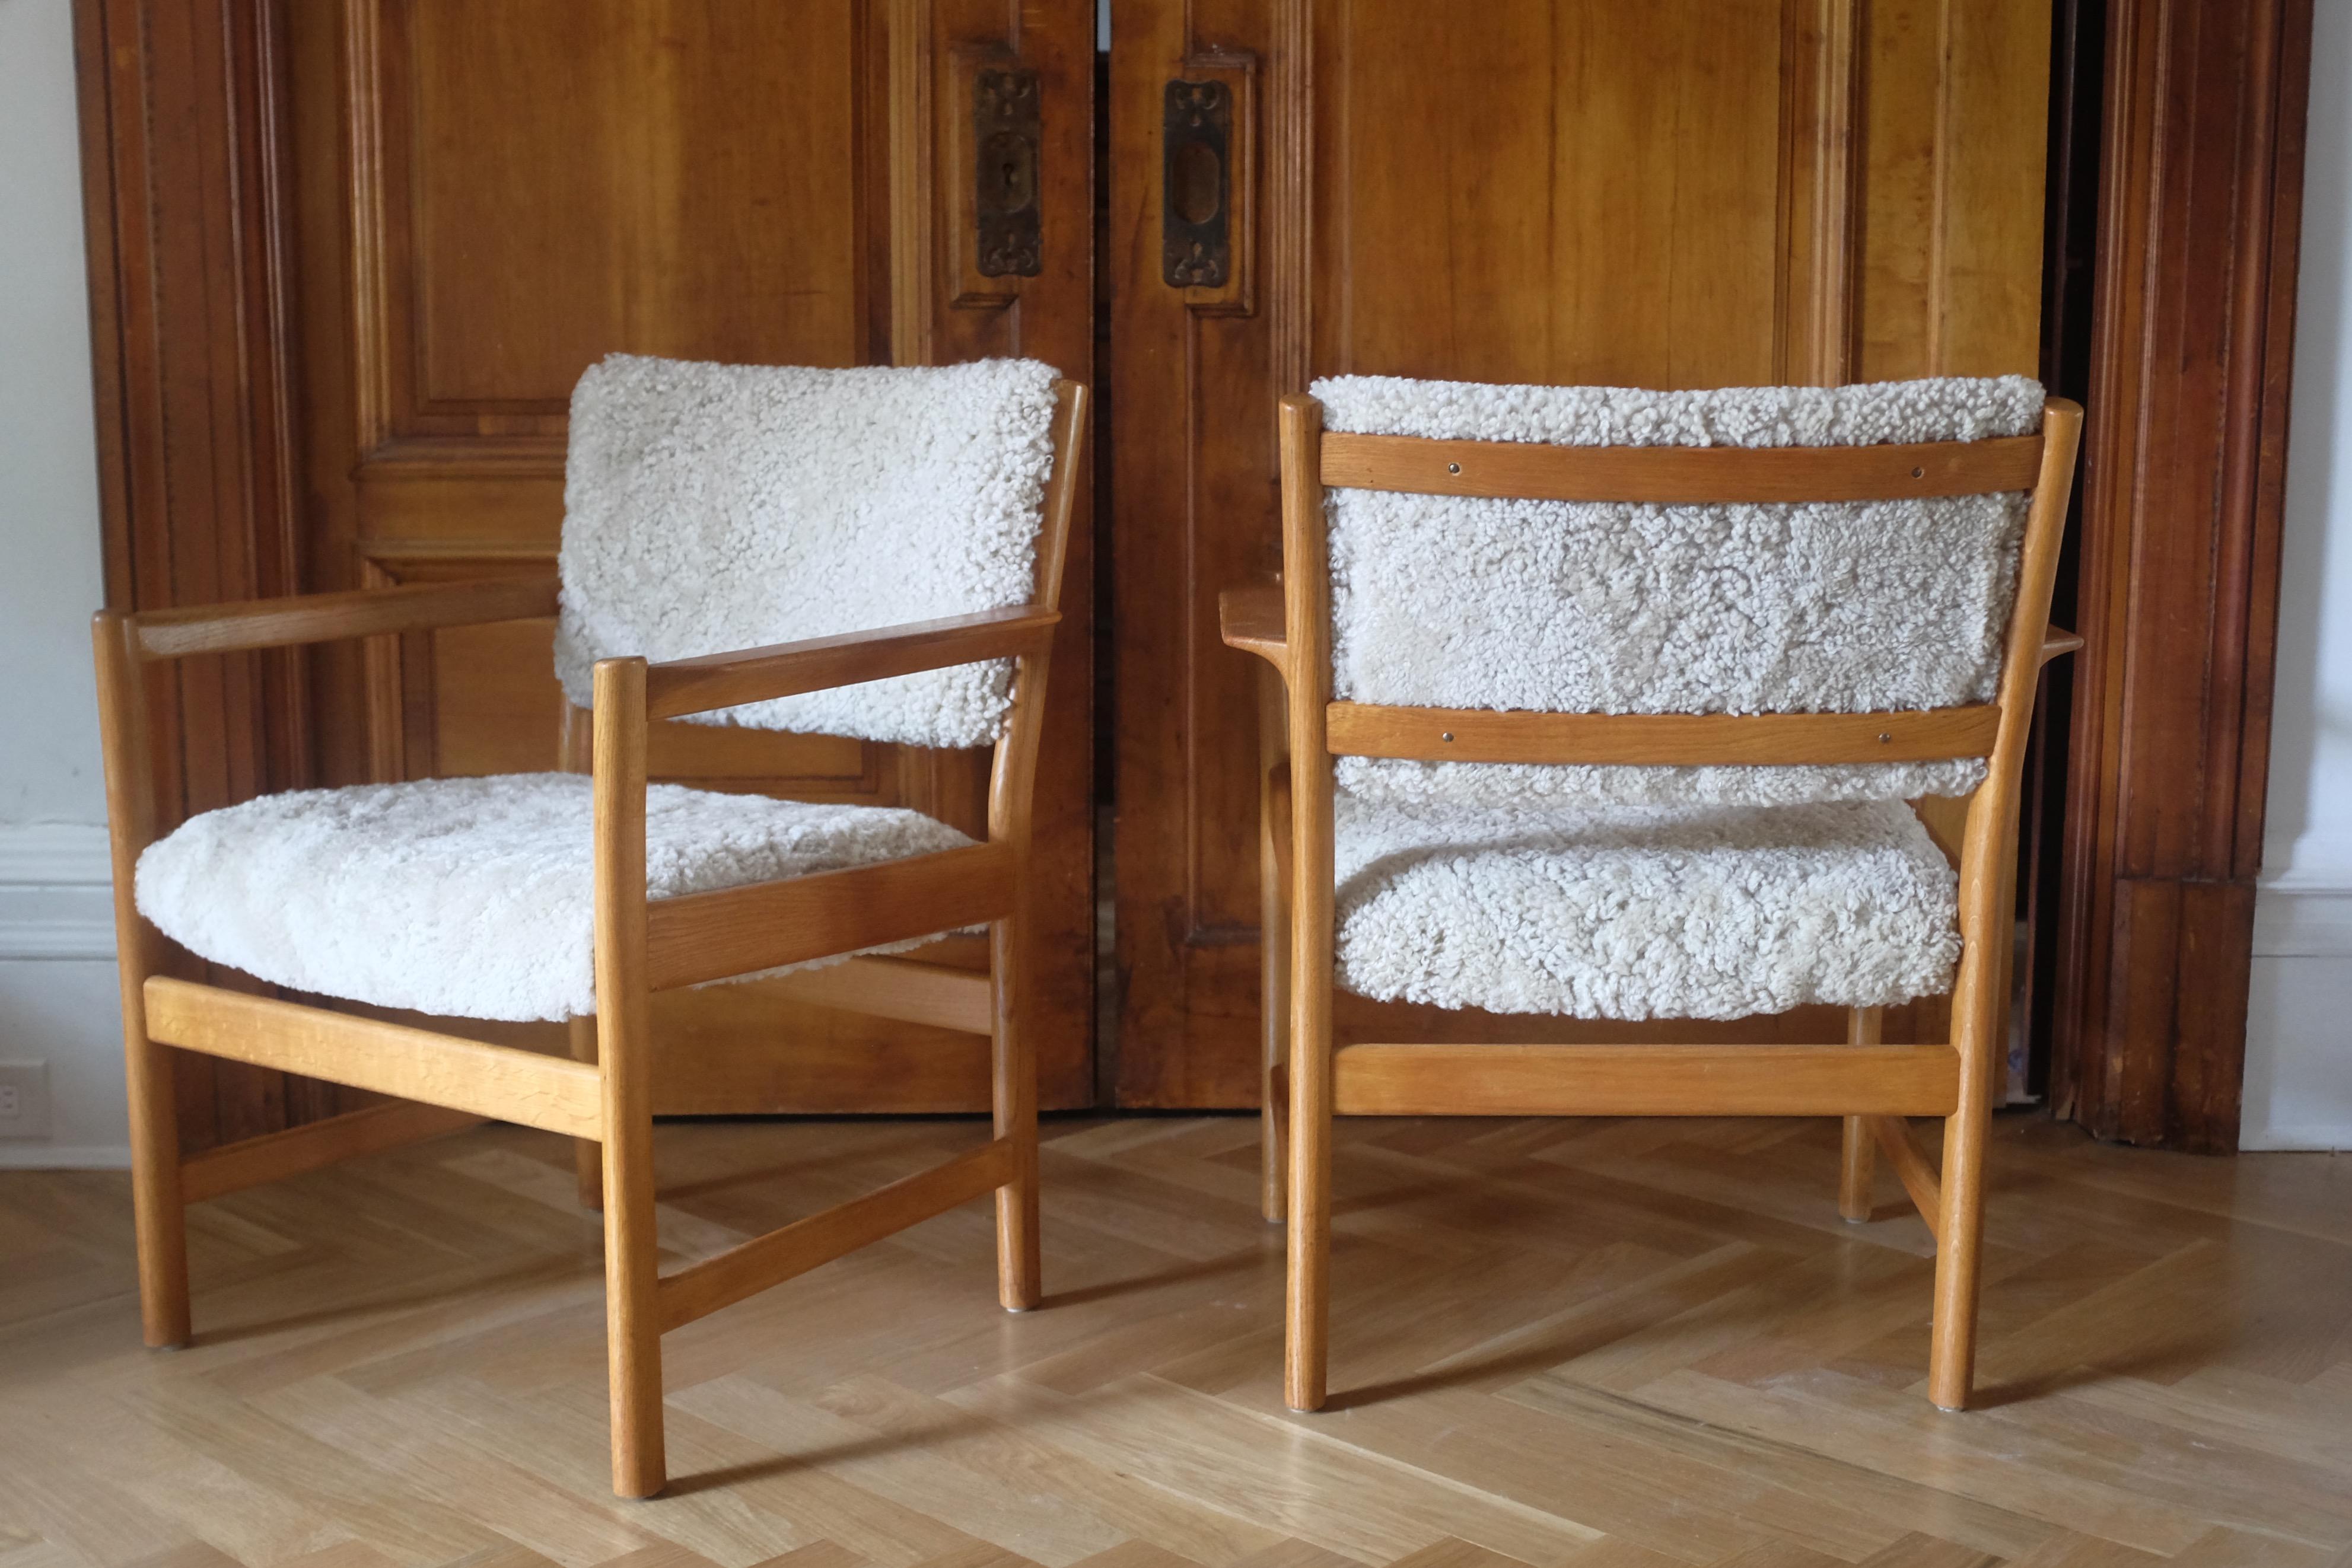 Wunderschönes Paar Sessel aus den 1960er Jahren von dem berühmten schwedischen Designer Alf Svensson für Bjästa Snickerifabrik. Sie sind beide aus Eichenholz gefertigt, in sehr gutem Zustand und neu mit Scandilock-Schafsfell gepolstert. 

Land: